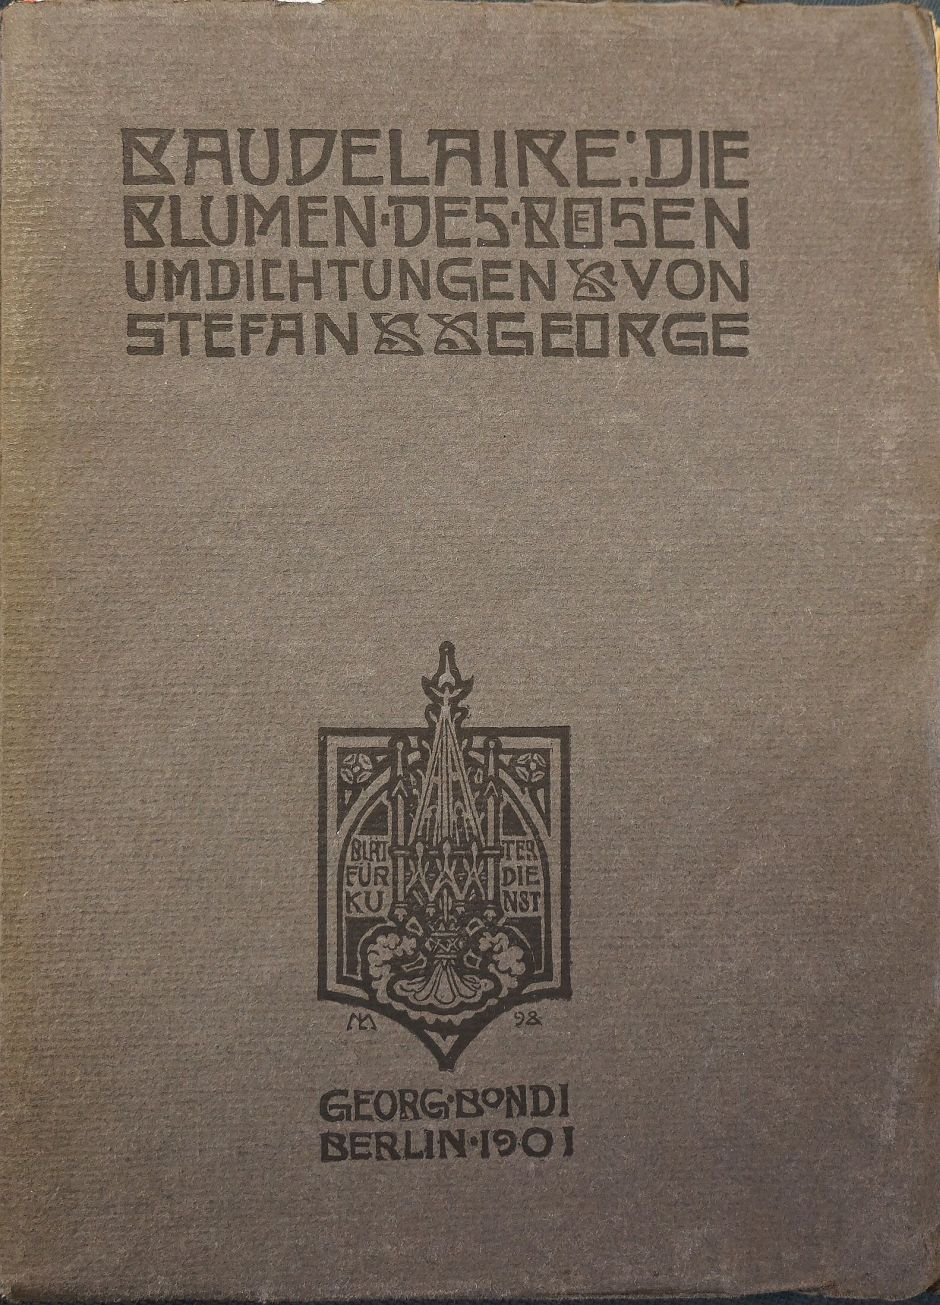 Lot 3124, Auction  115, George, Stefan, Konvolut von drei Werken, übersetzt von Stefan George